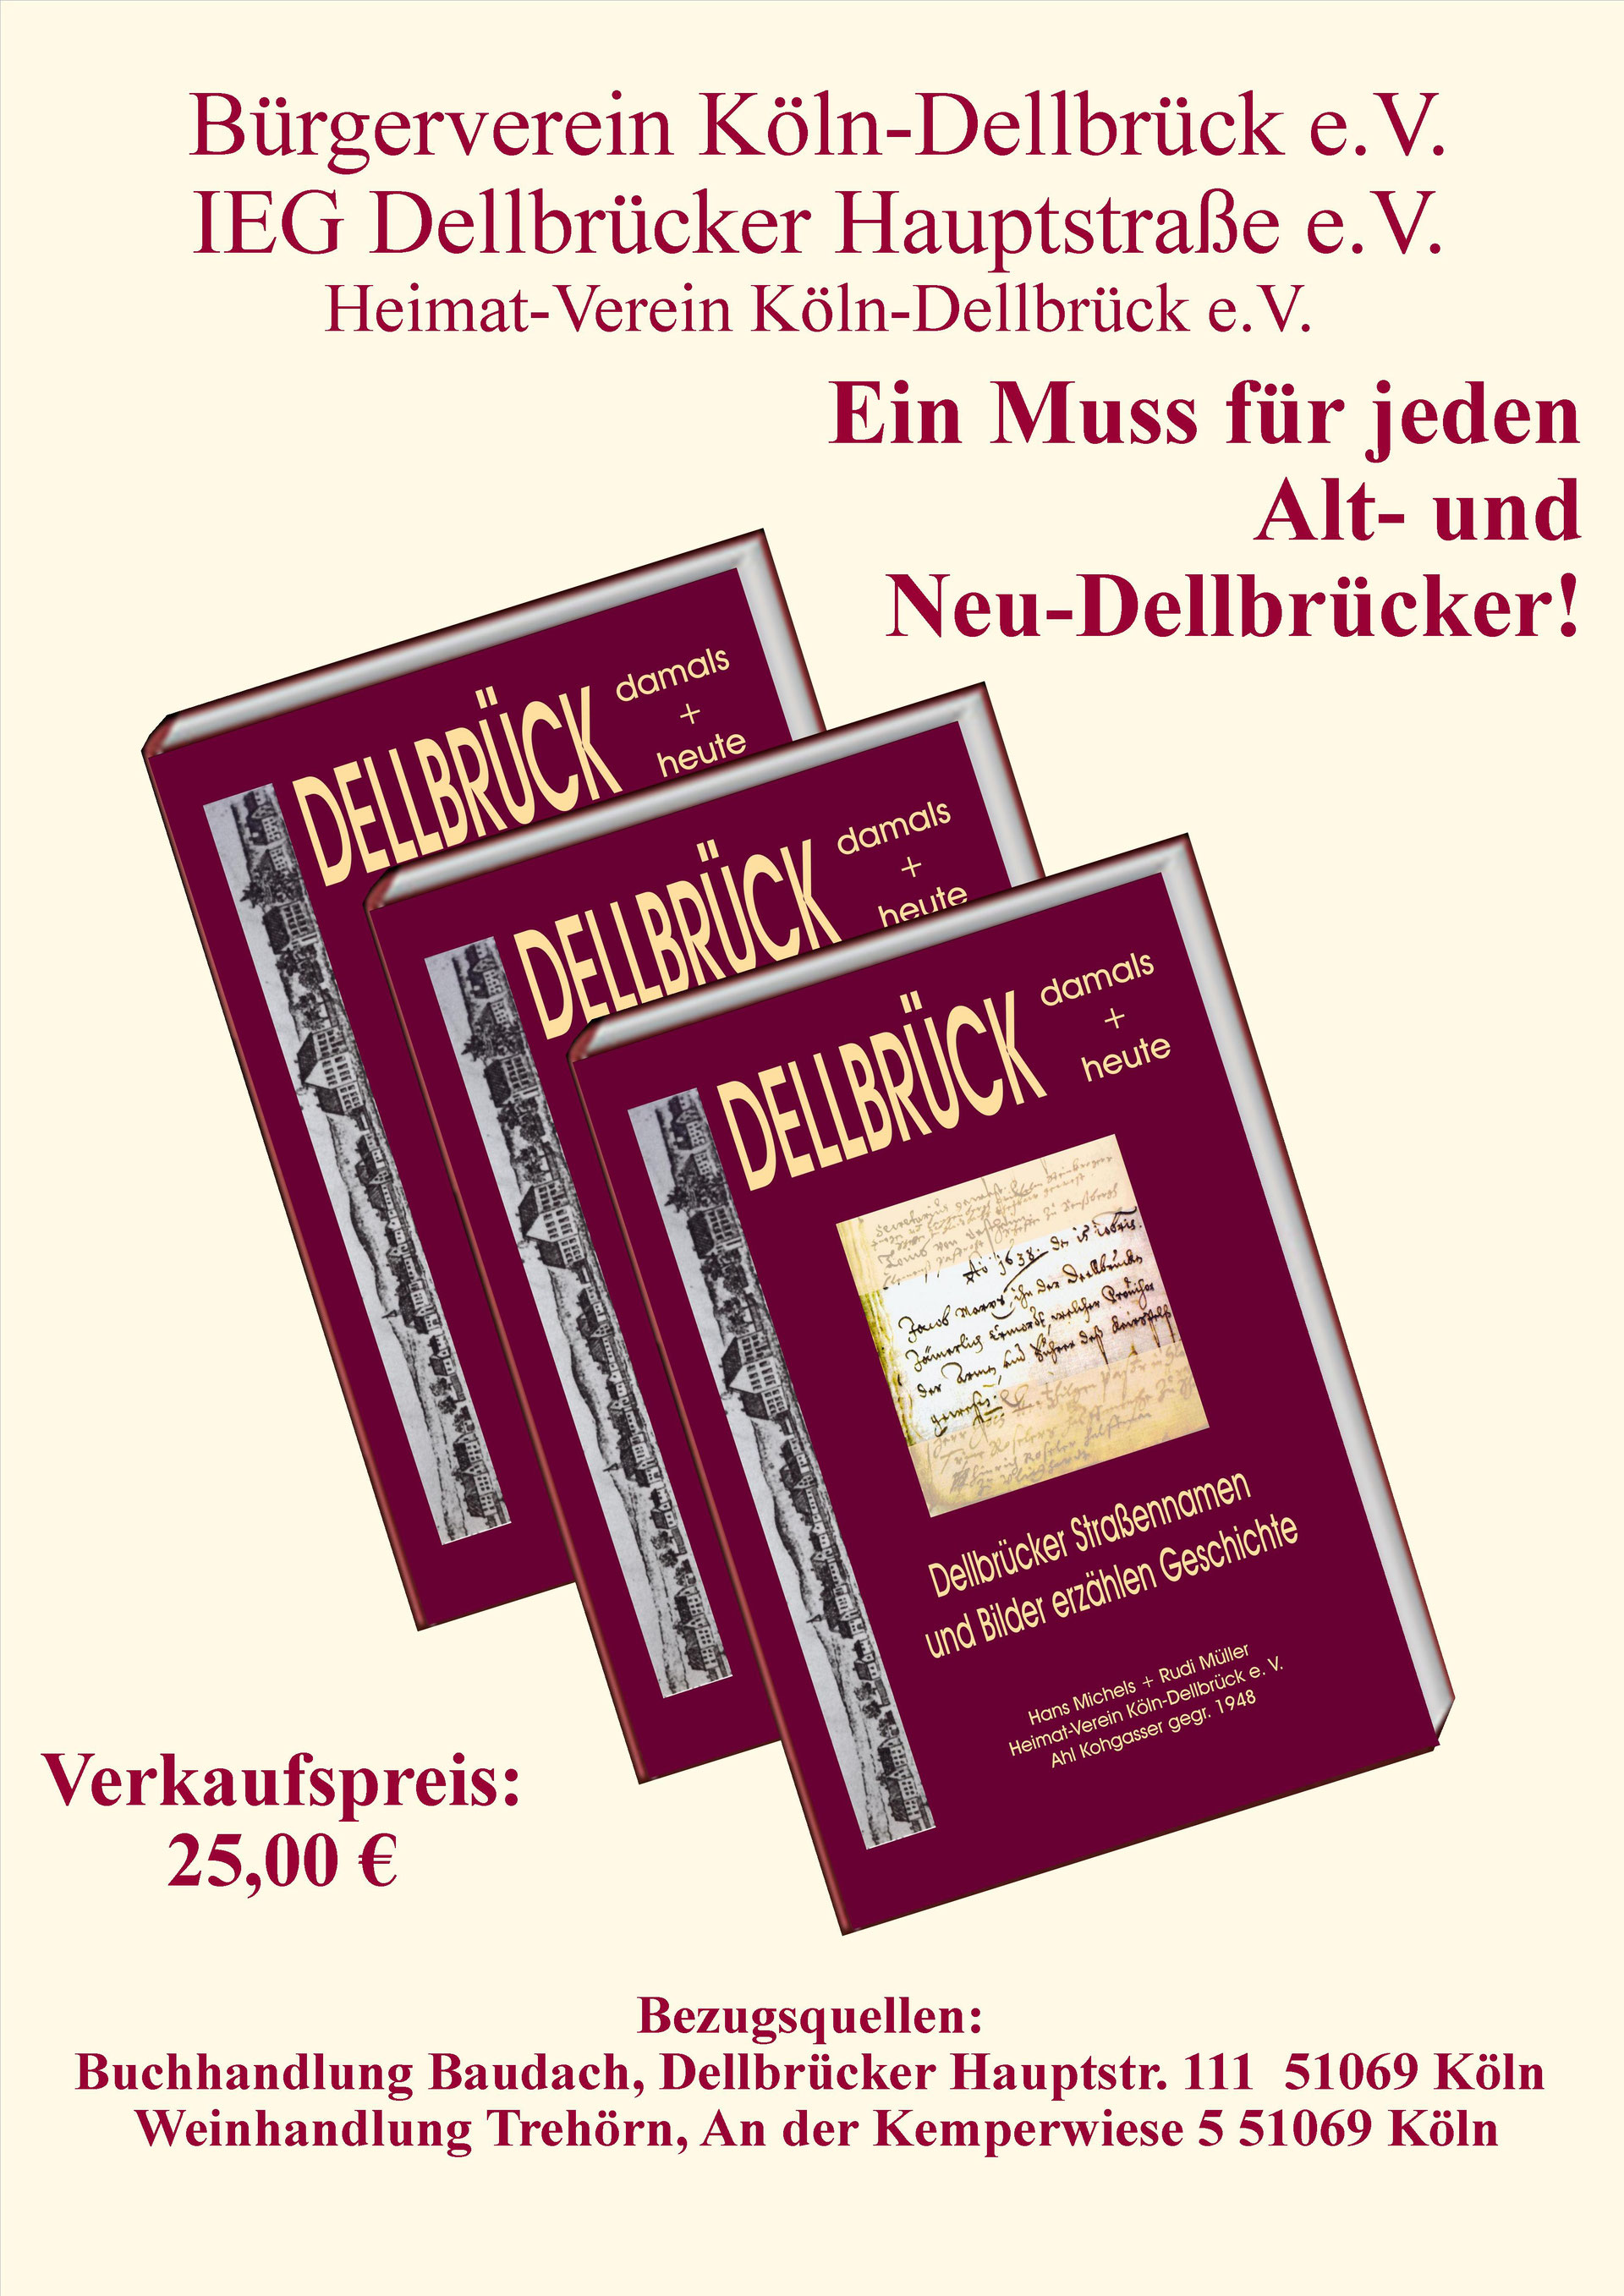 (c) Ahlkohgasser-koeln-dellbrueck.jimdo.com